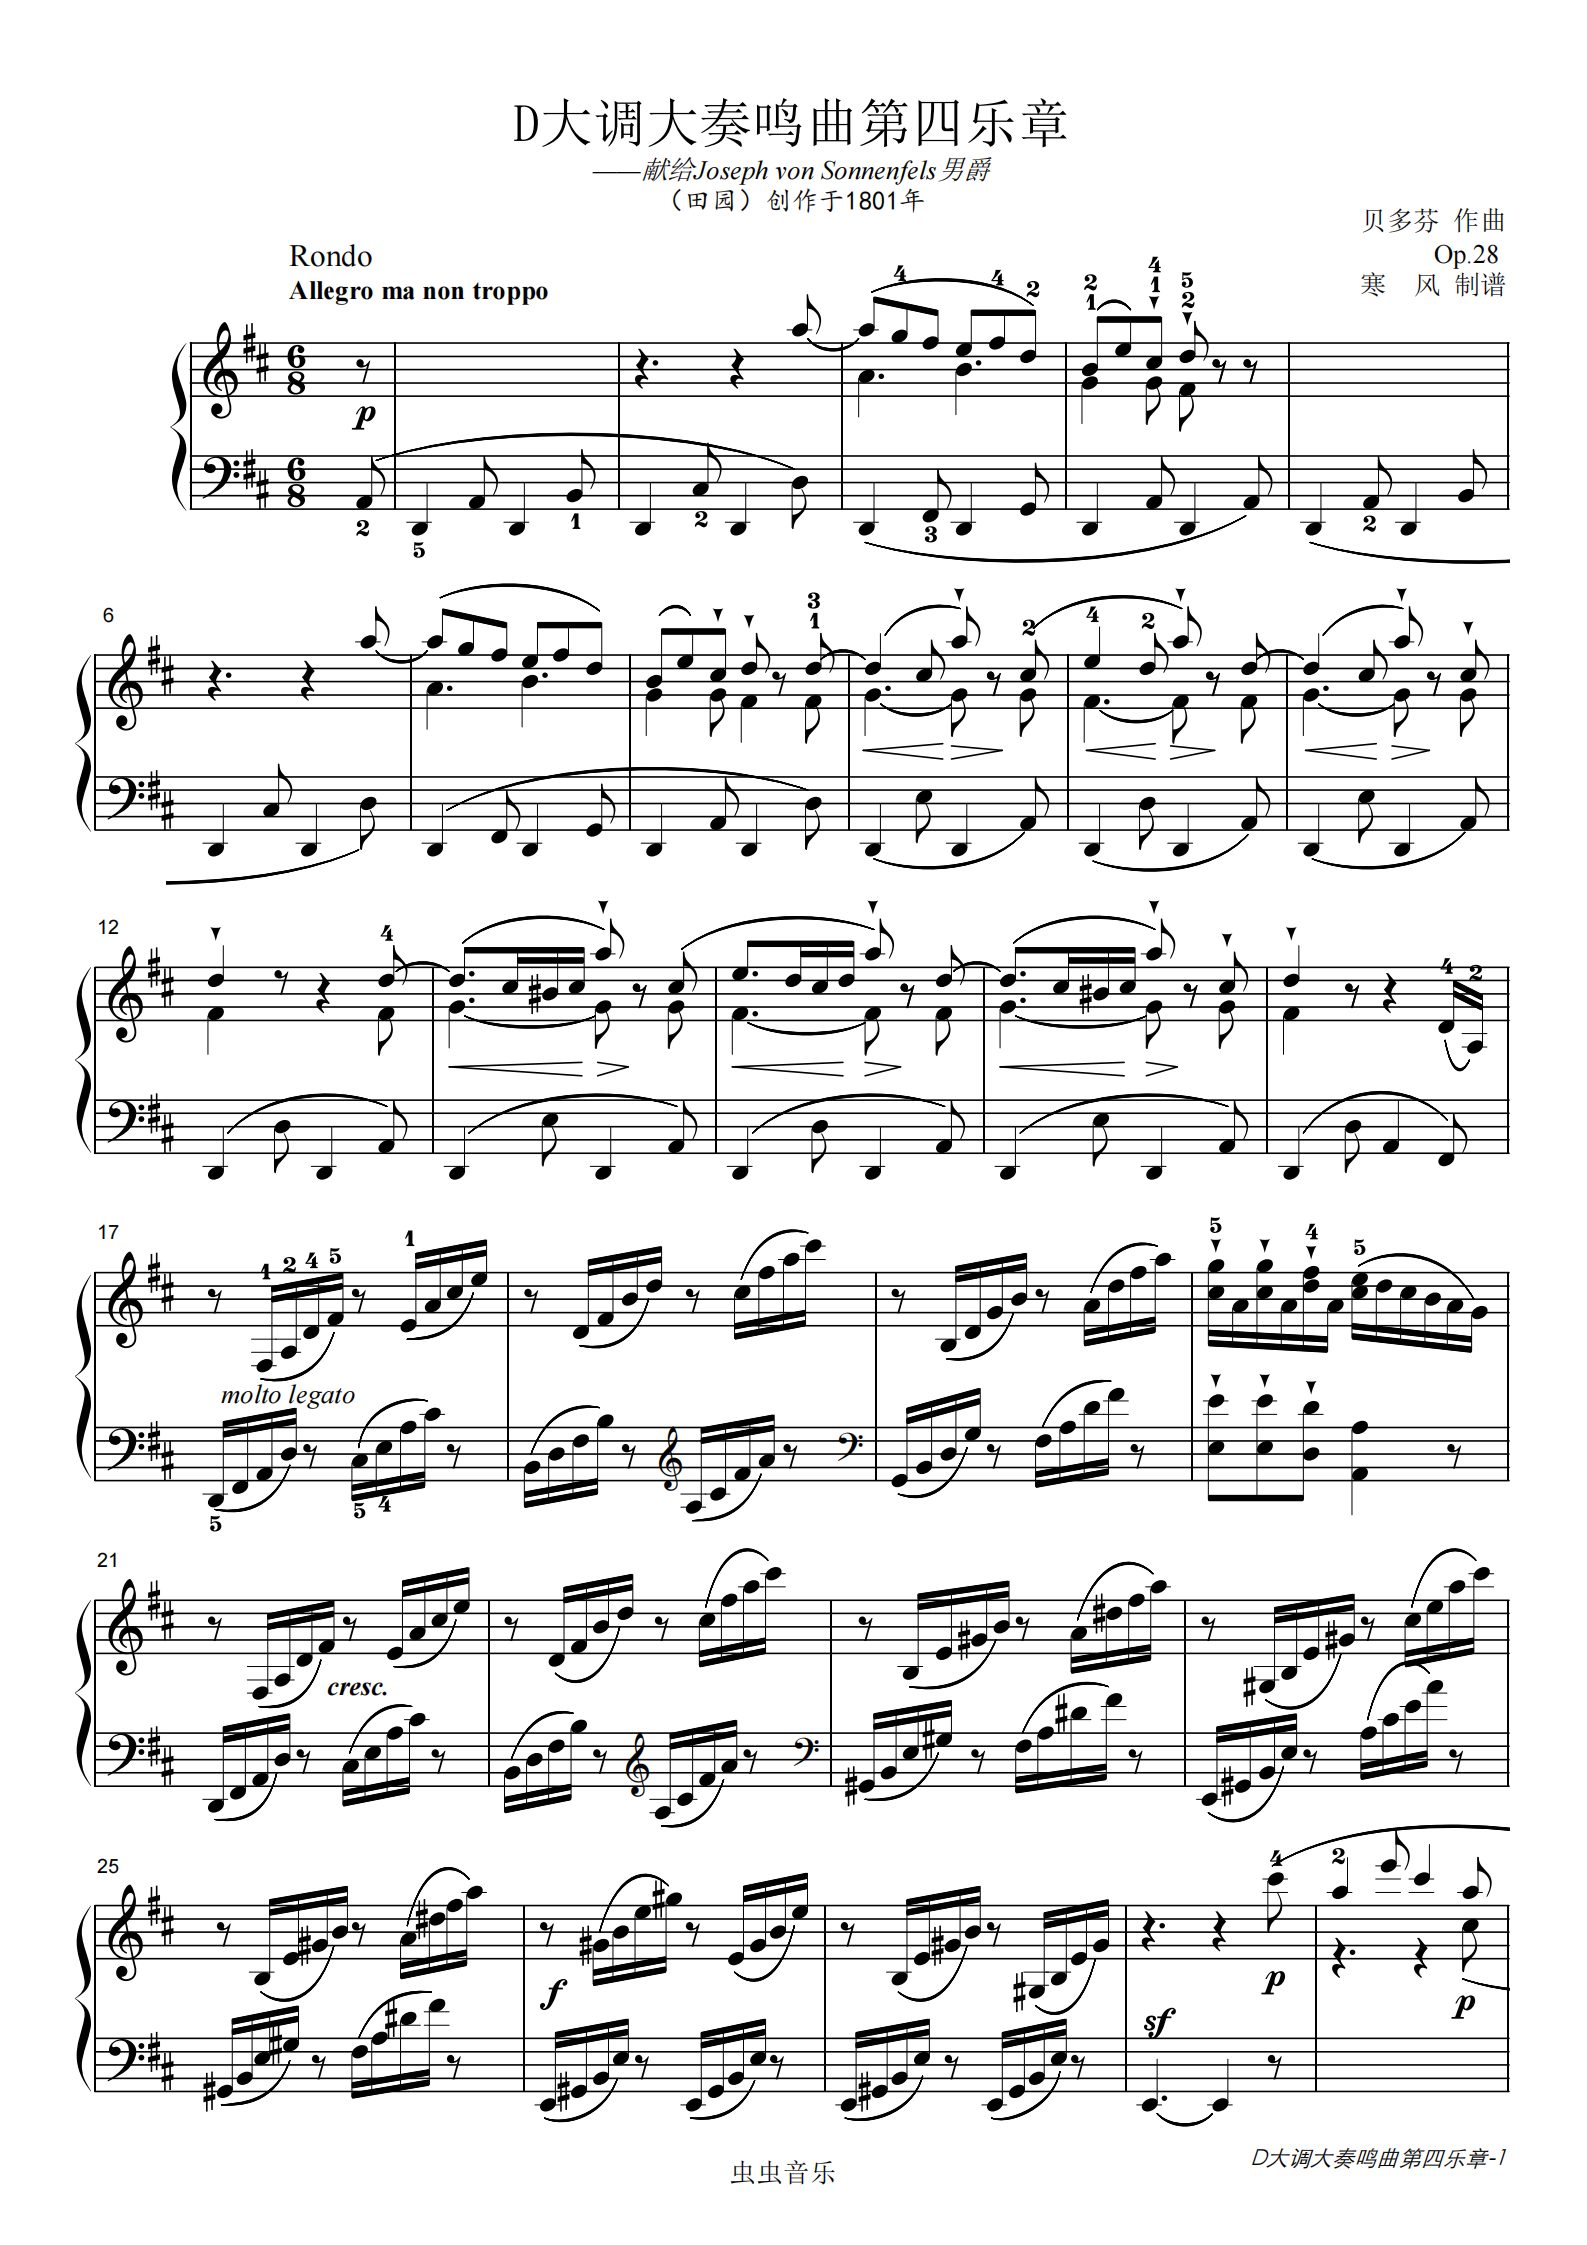 贝多芬-d大调田园奏鸣曲第四乐章钢琴谱-寒风-虫虫钢琴